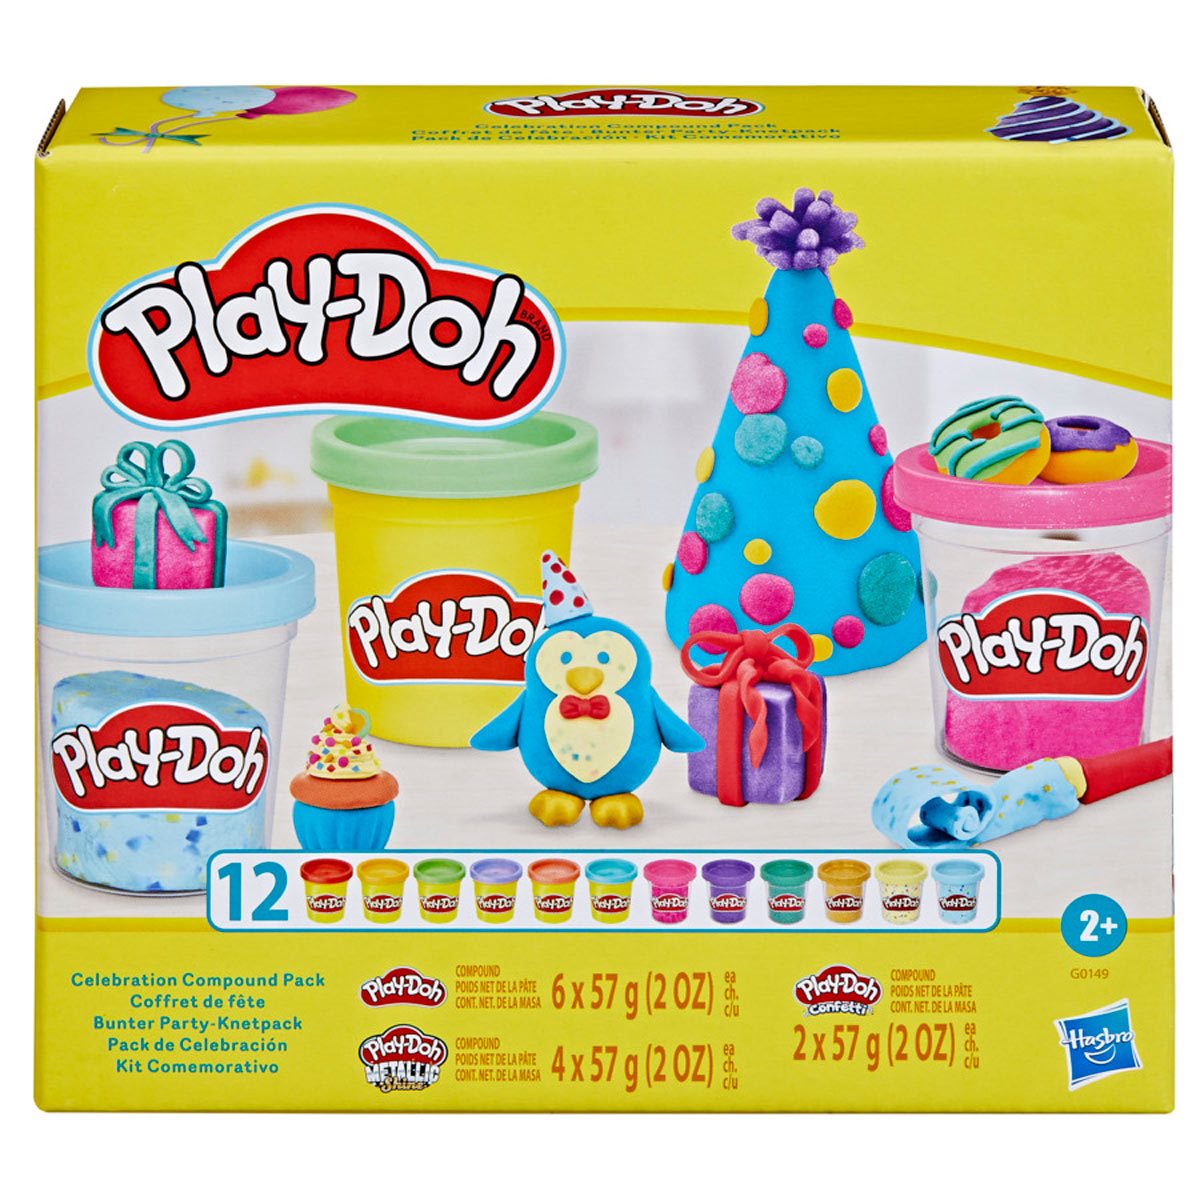 Play-Doh Confetti Compound 24-Pack Bundle, 96 Ounces Modeling Compound 